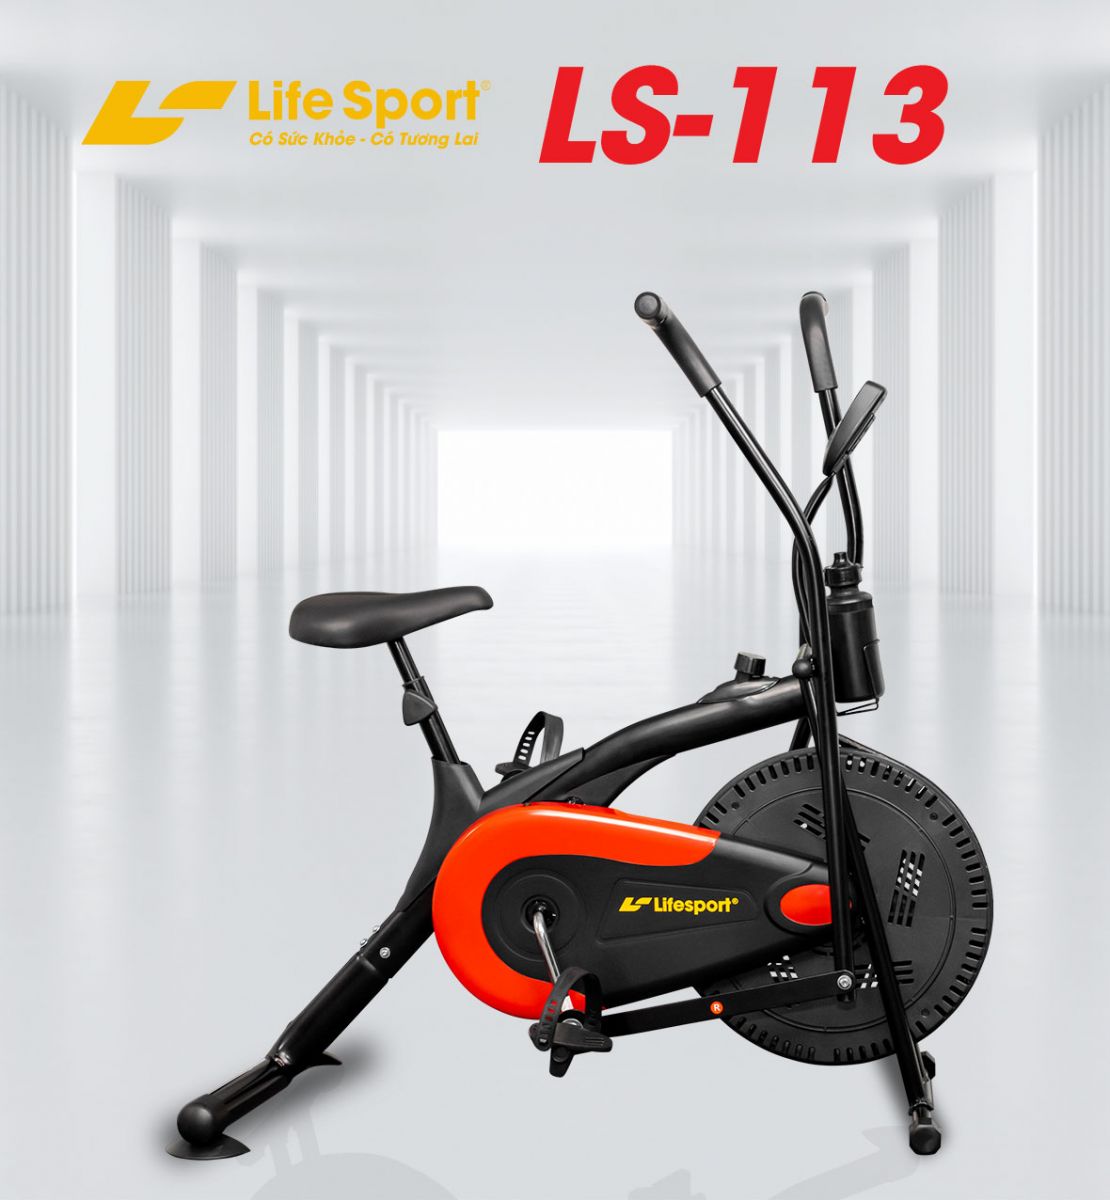 Rèn luyện sức khỏe với xe đạp tập thể dục Lifesport Ls-113